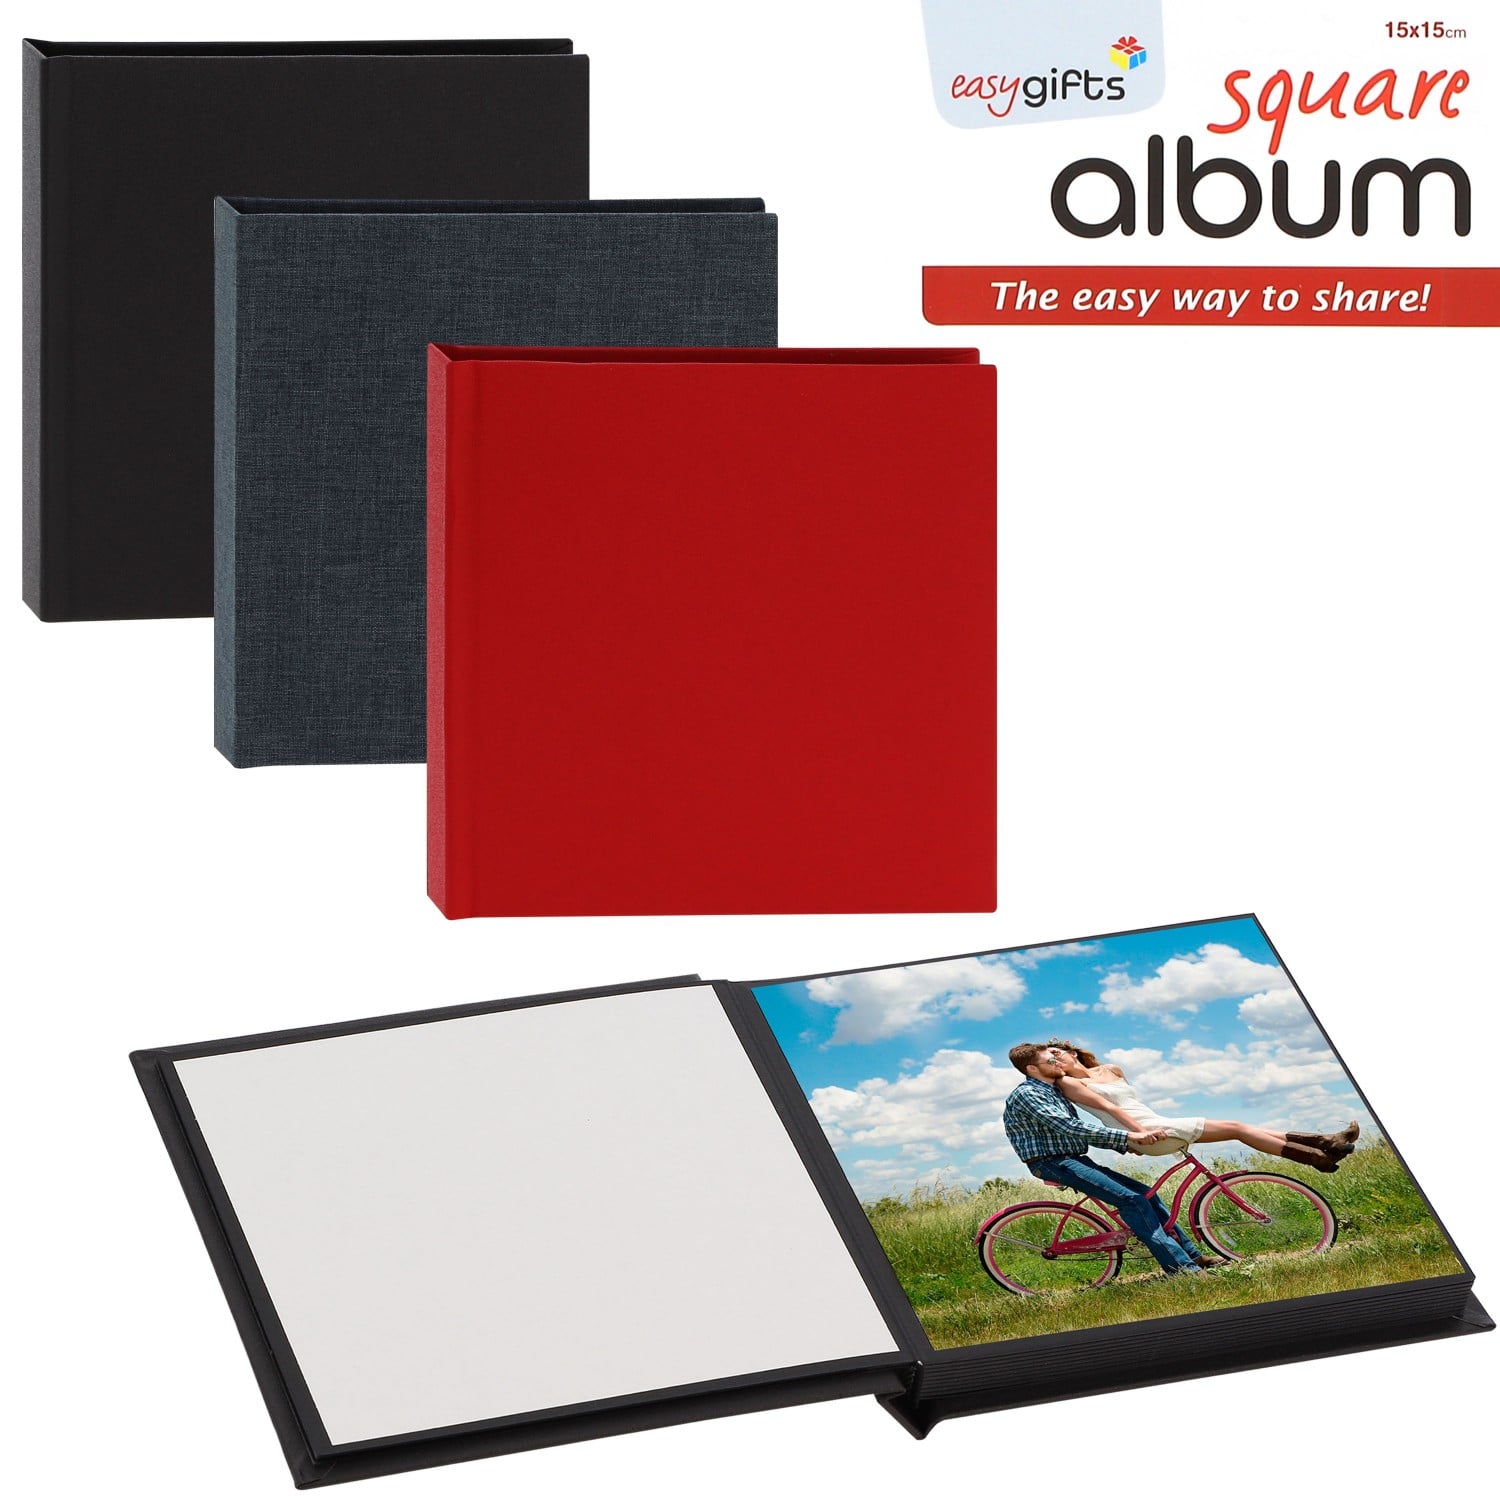 Mini album I GIFTS adhésif EASYALBUM - 20 pages noires - 20 photos 15x15cm  - Couverture Coloris aléatoire 16,5x16,5cm - à l'unité